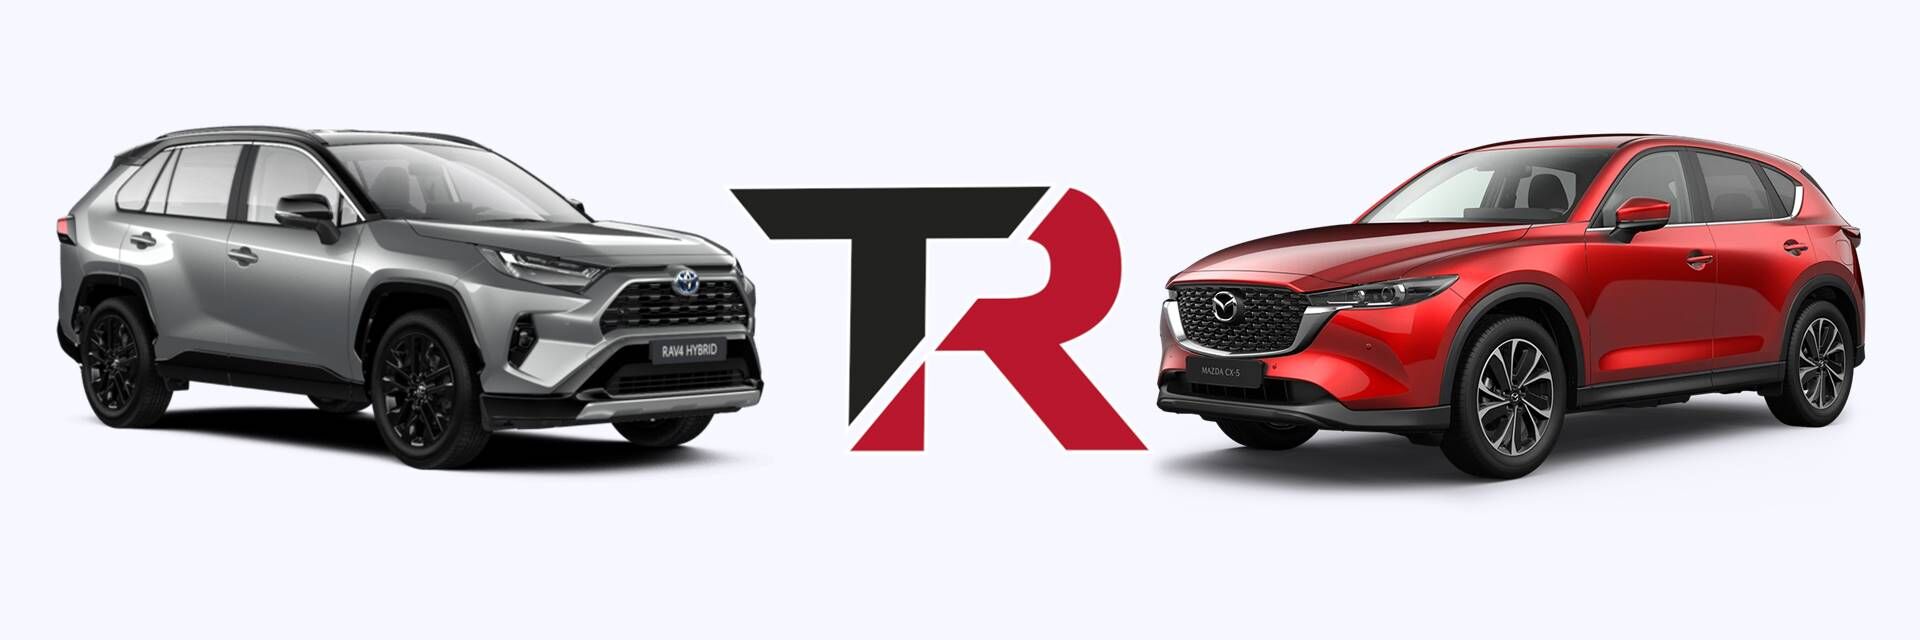 Comparativa entre el Toyota Rav4 y el Mazda C5X